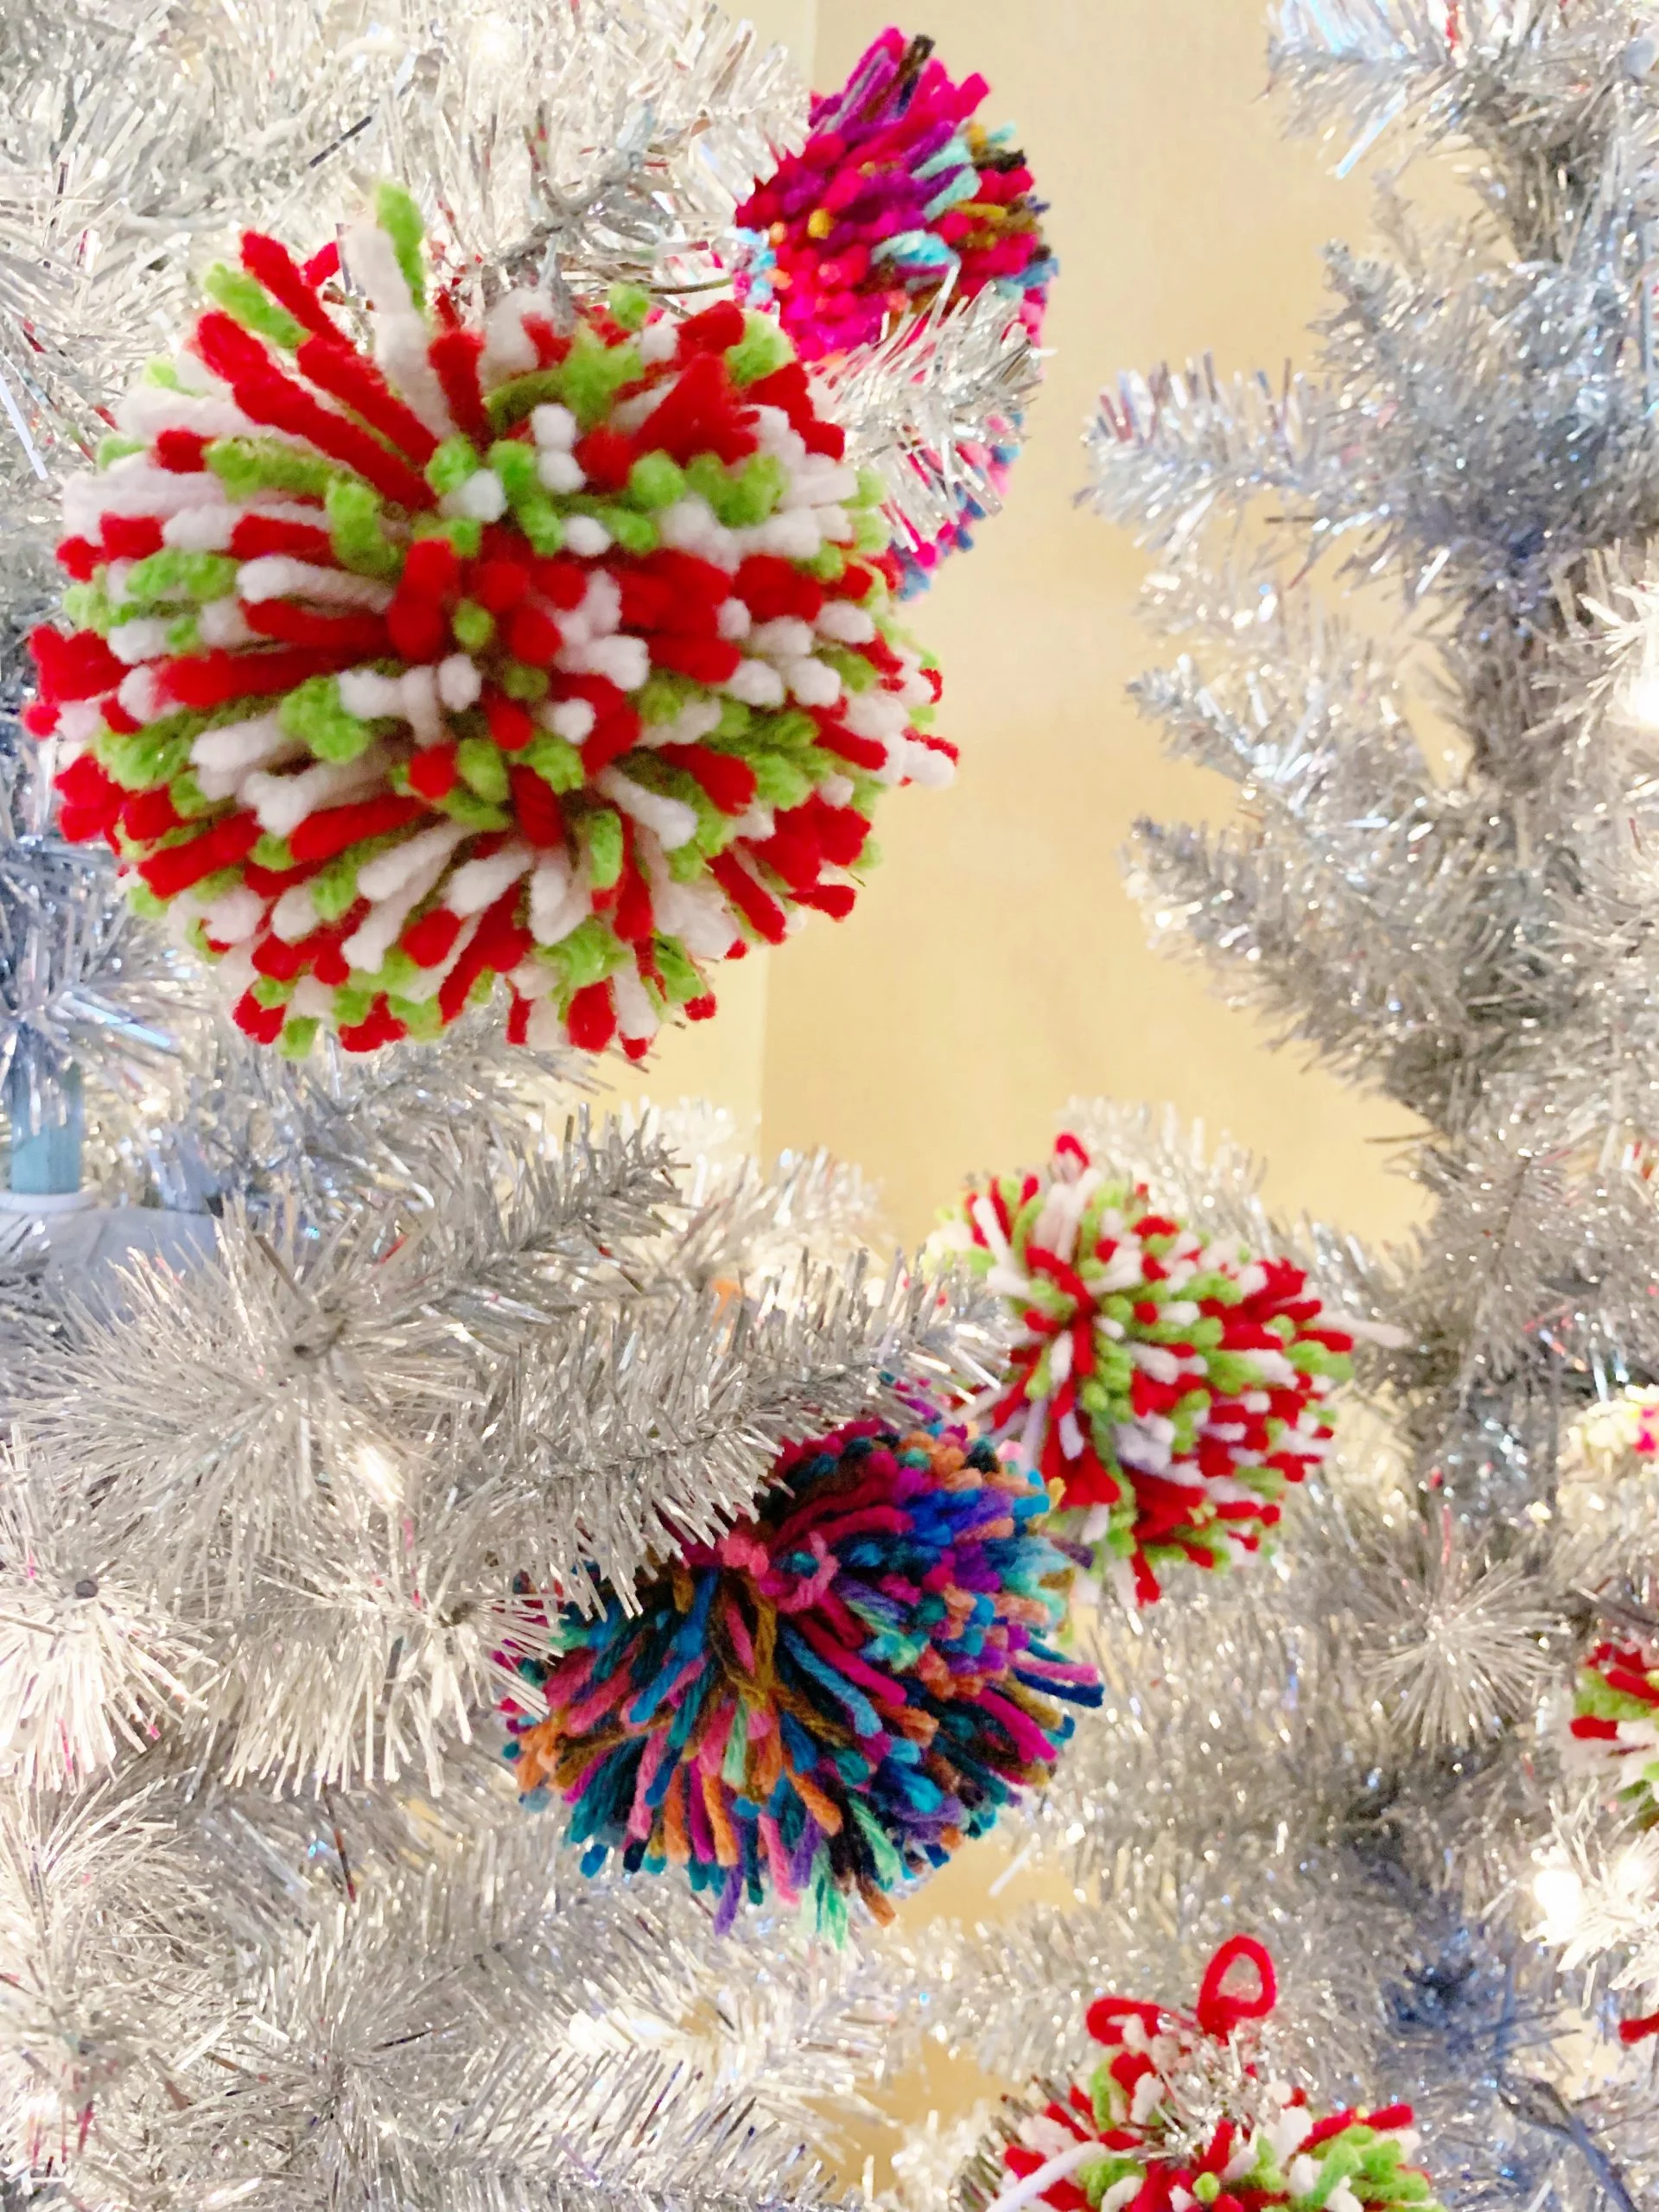 Pom Pom Christmas Tree - A fun and whimsical Christmas decor tutorial for how to make a Christmas tree decorated with pom poms! | Aluminum Pom Pom Tree - Christmas Tree Decorated With Pom Poms - Tinsel Tree